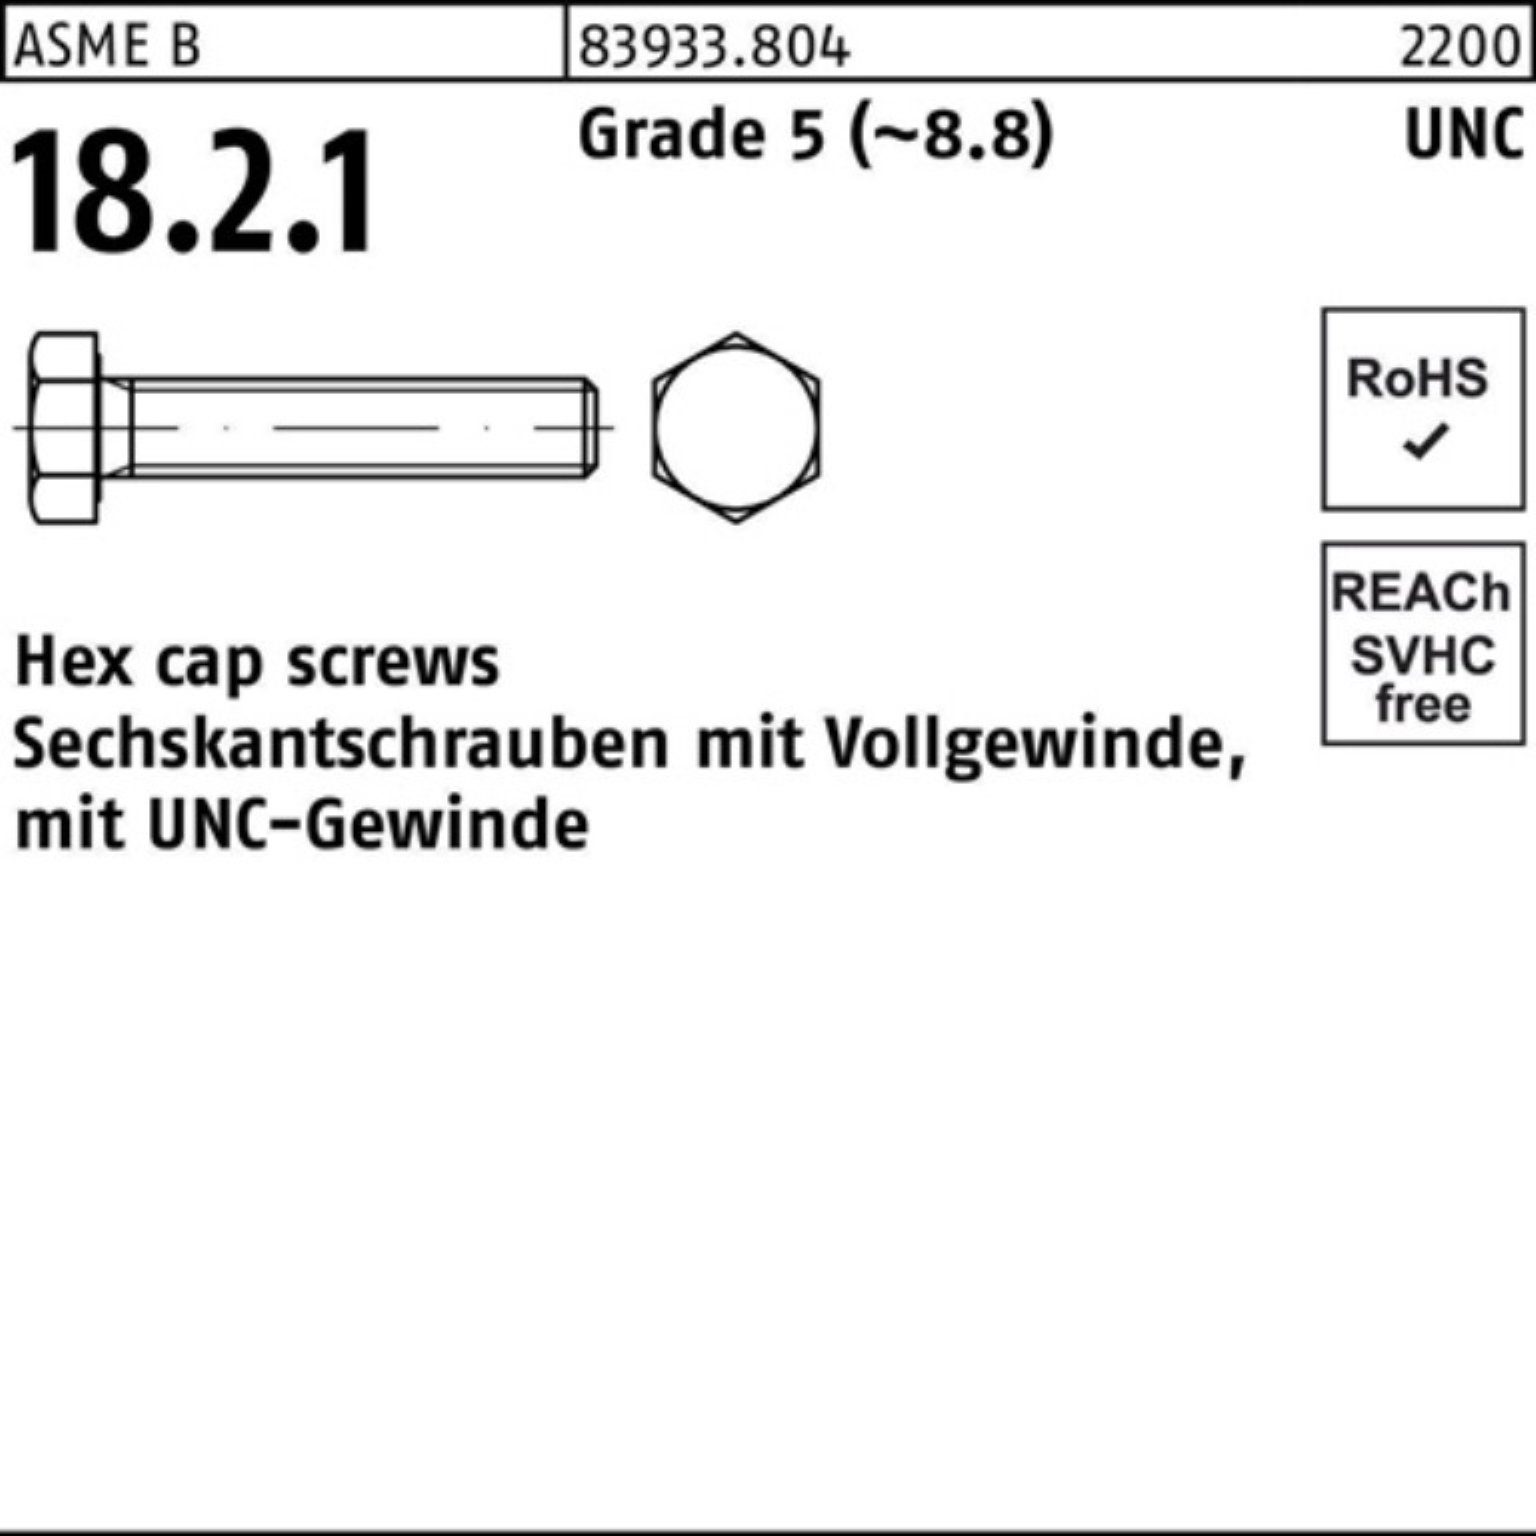 Reyher Sechskantschraube 100er Pack Sechskantschraube R 83933 UNC-Gewinde VG 3/8x 3/4 Grade 5